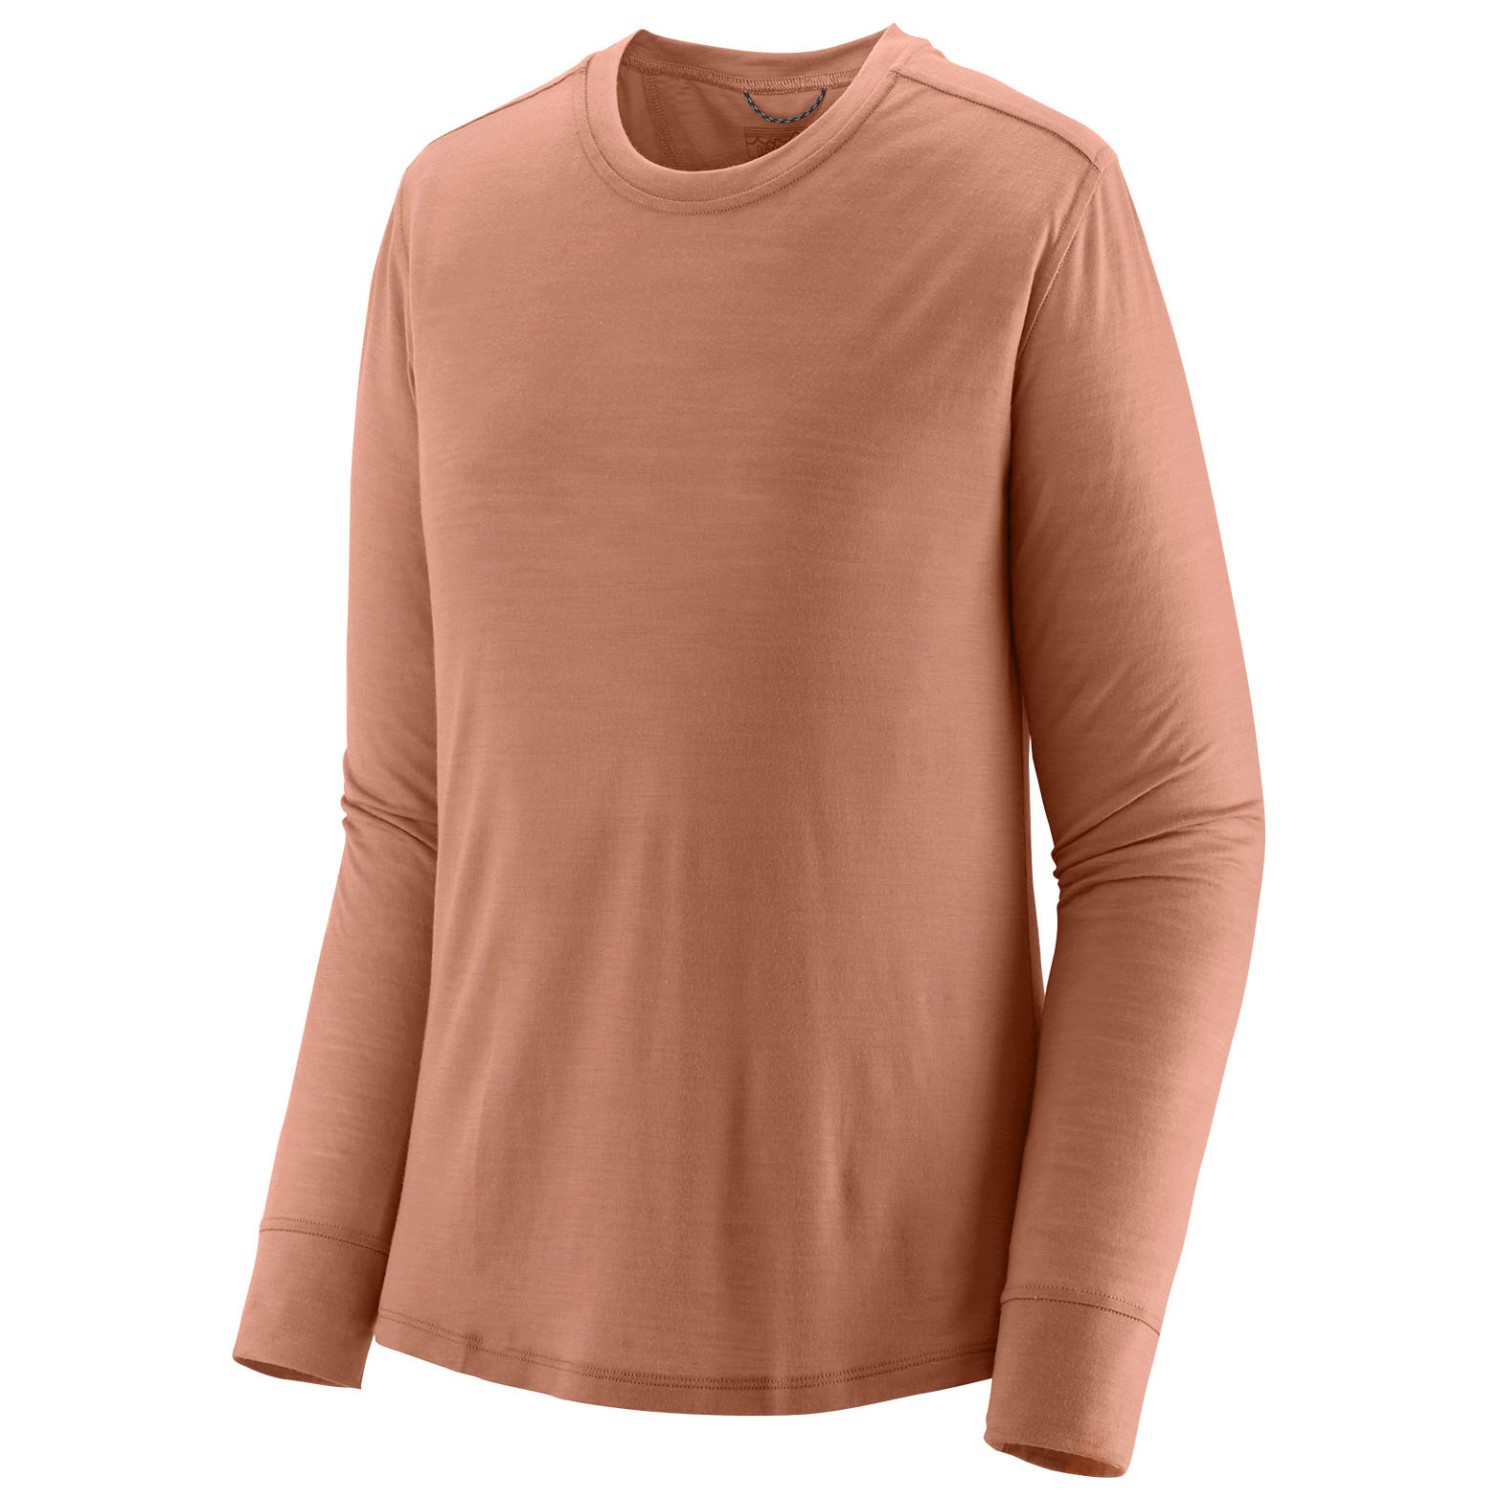 Рубашка из мериноса Patagonia Women's L/S Cap Cool Merino Shirt, цвет Terra Pink